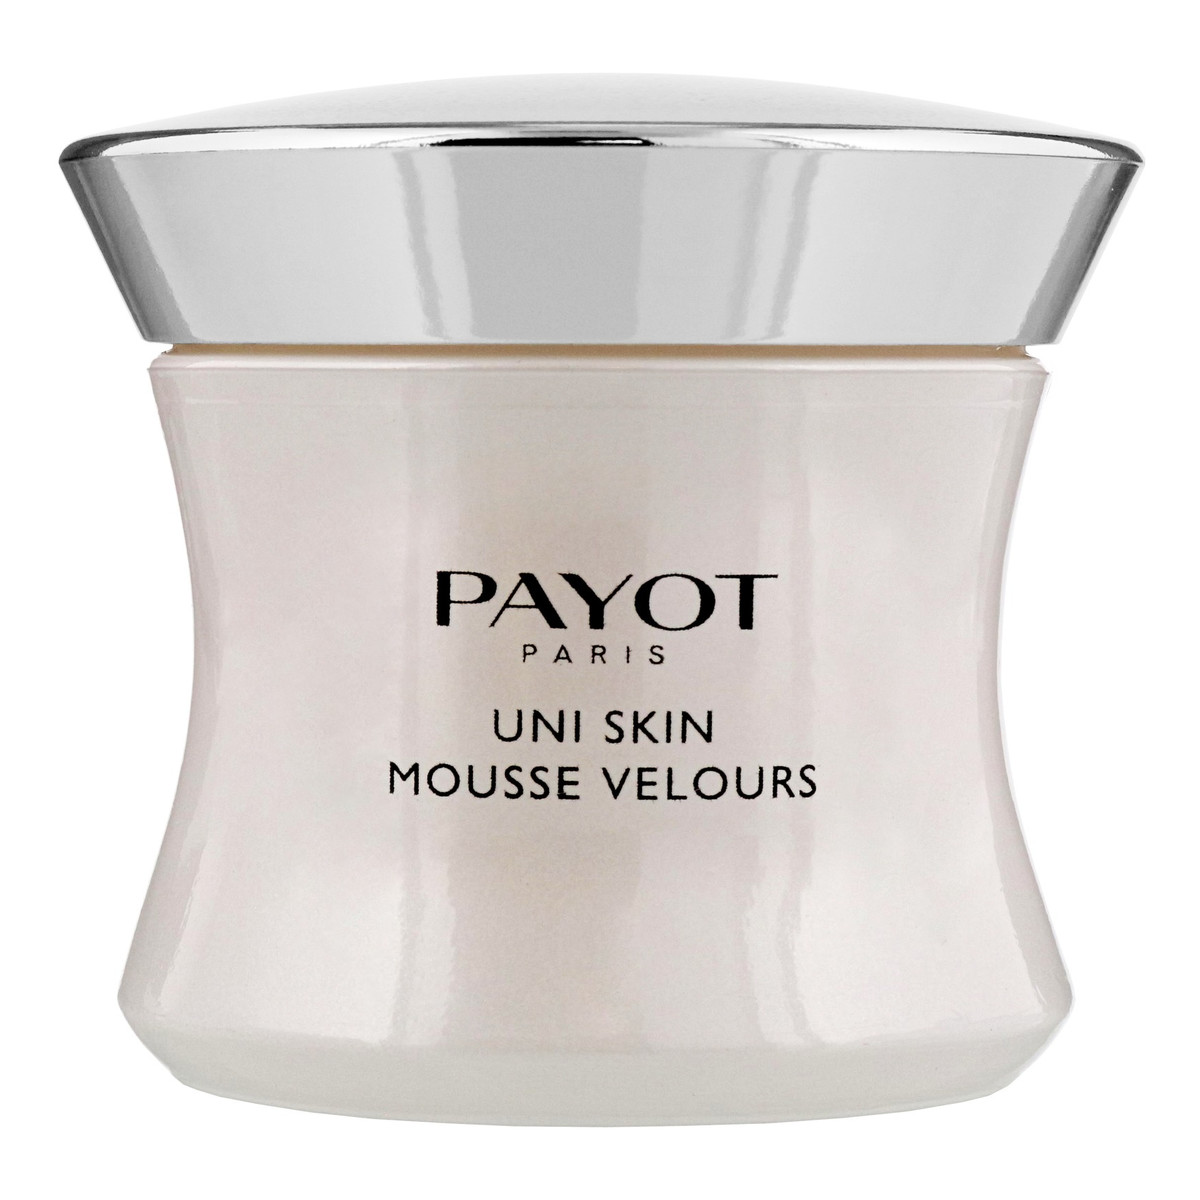 Payot Uni Skin Mousse Velours krem do twarzy na dzień 50ml